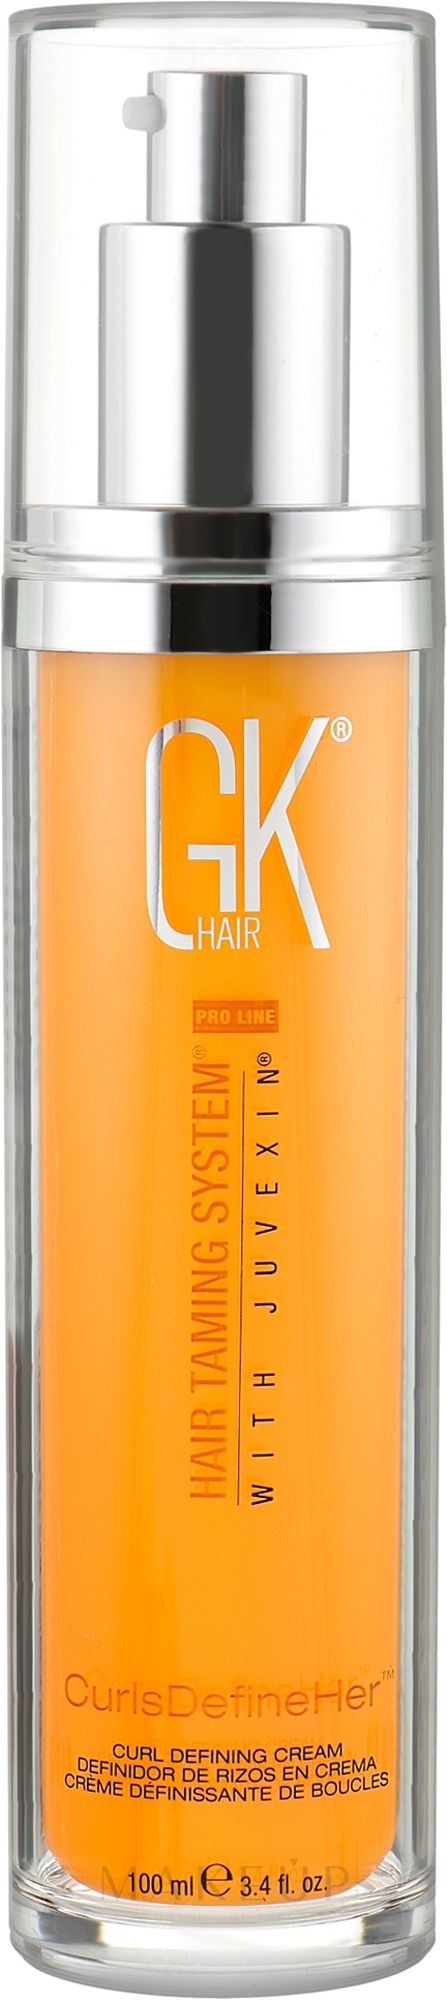 Creme für die Locken - GKhair Curls Define Her — Foto 100 ml